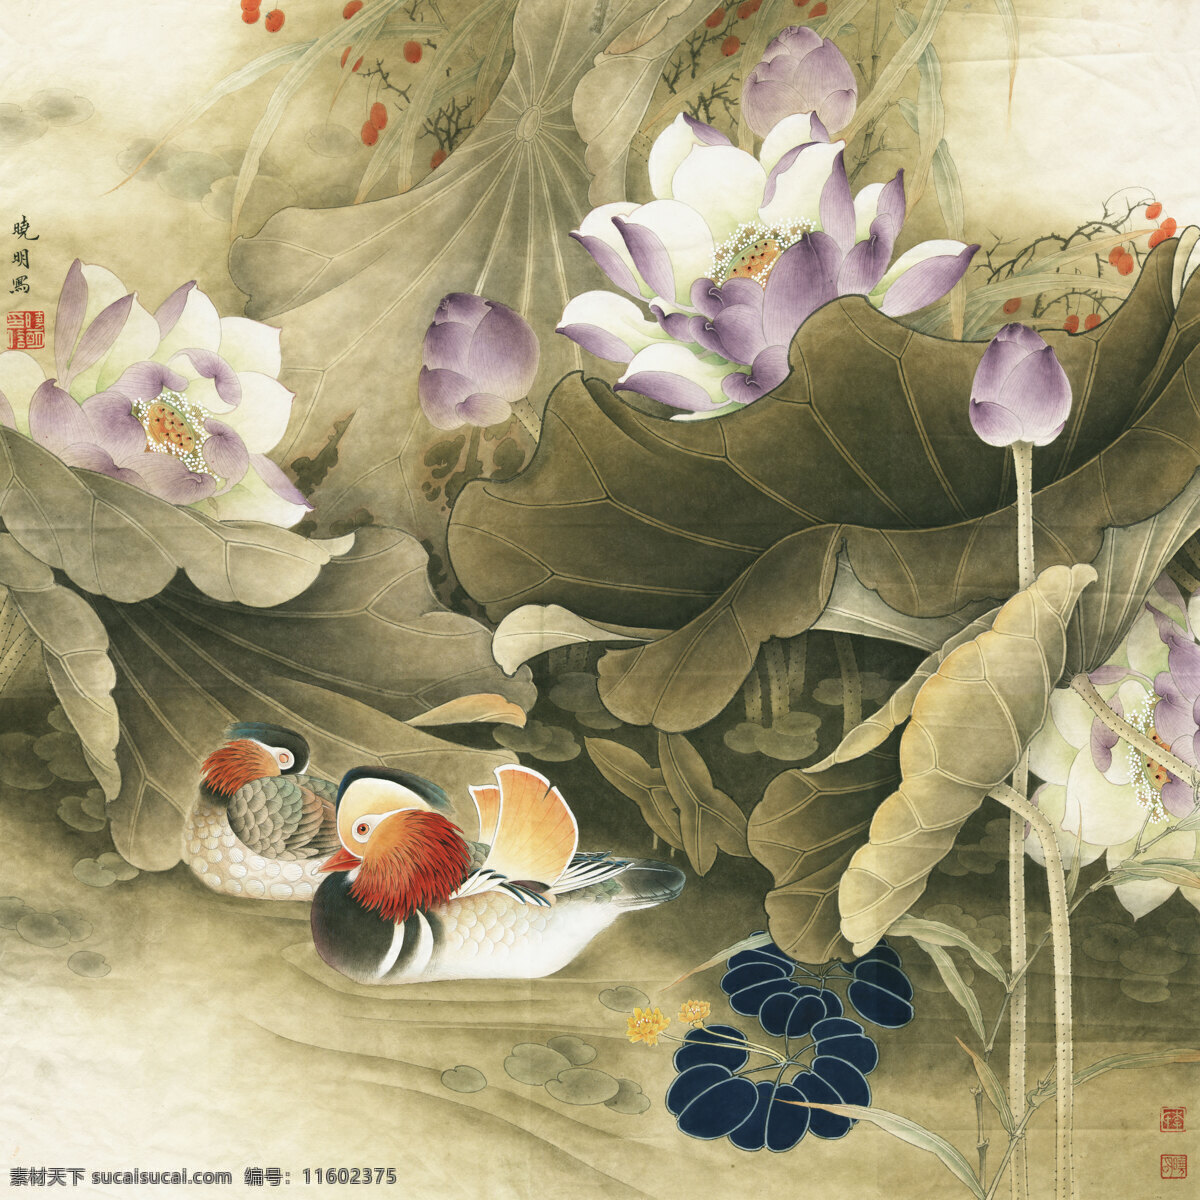 紫风微醺 花鸟画 设计素材 花鸟画篇 中国画篇 书画美术 黄色